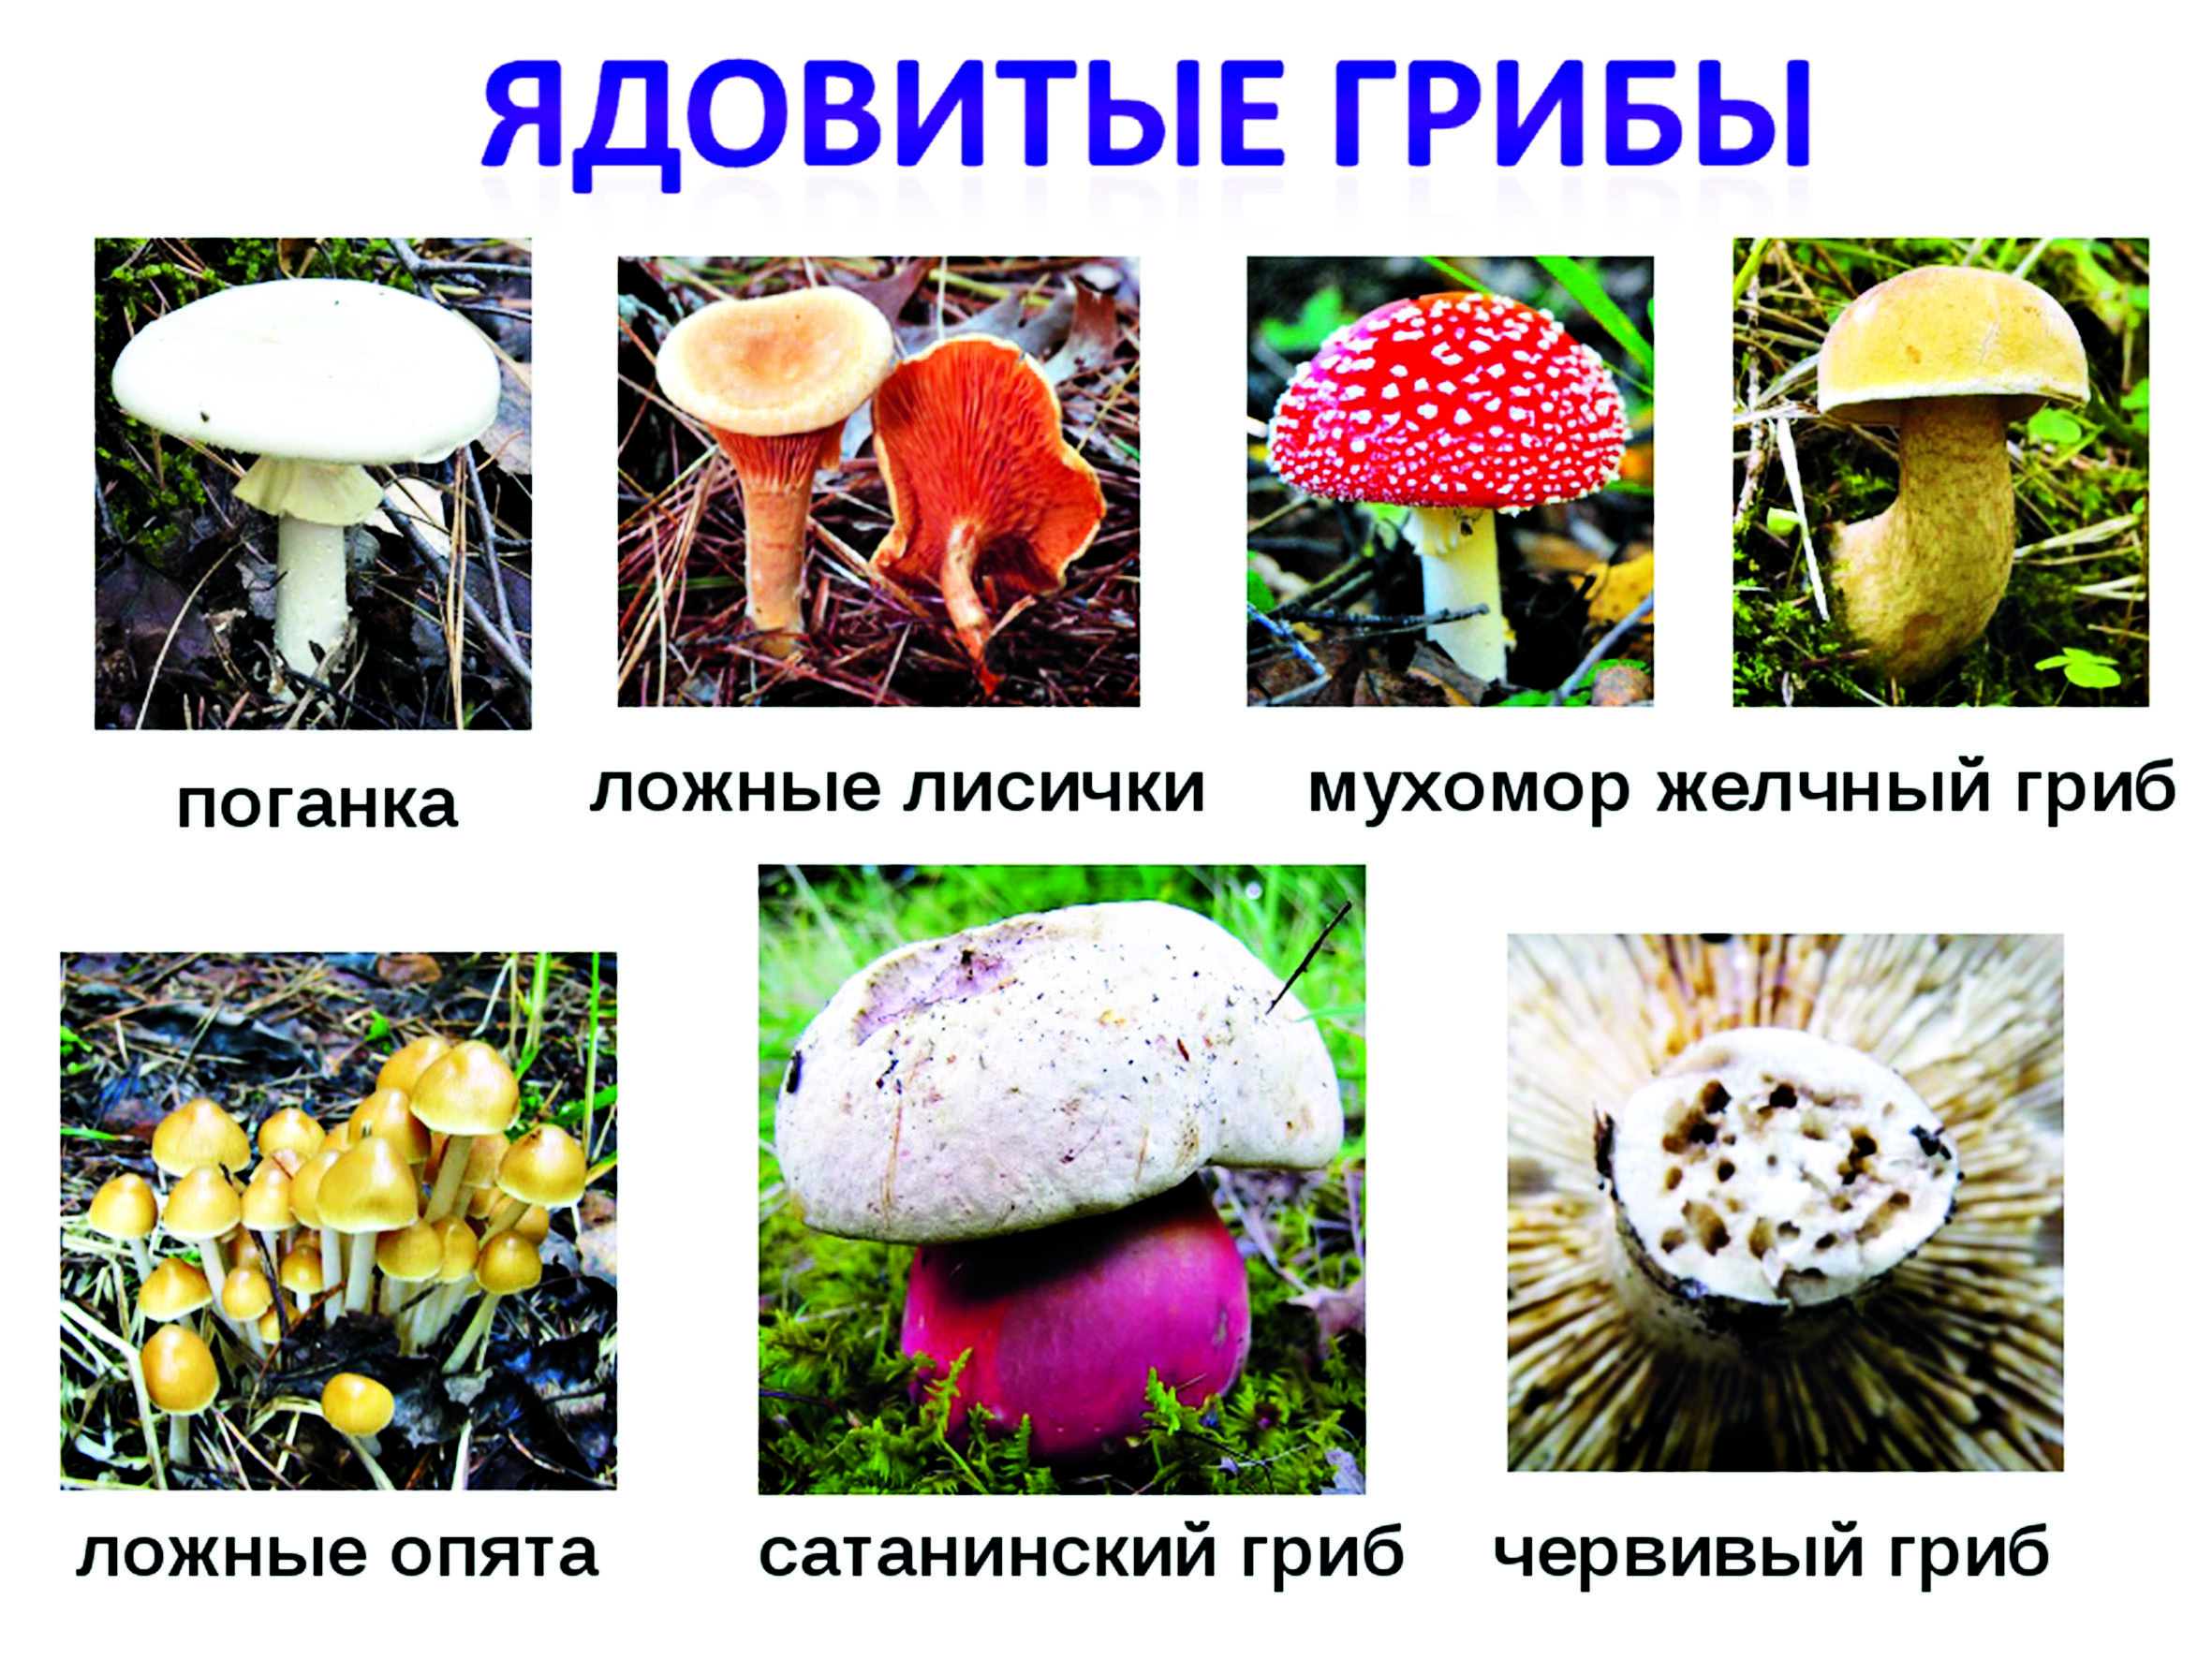 Съедобные и несъедобные грибы на тонких длинных ножках с белыми, коричневыми и другими шляпками